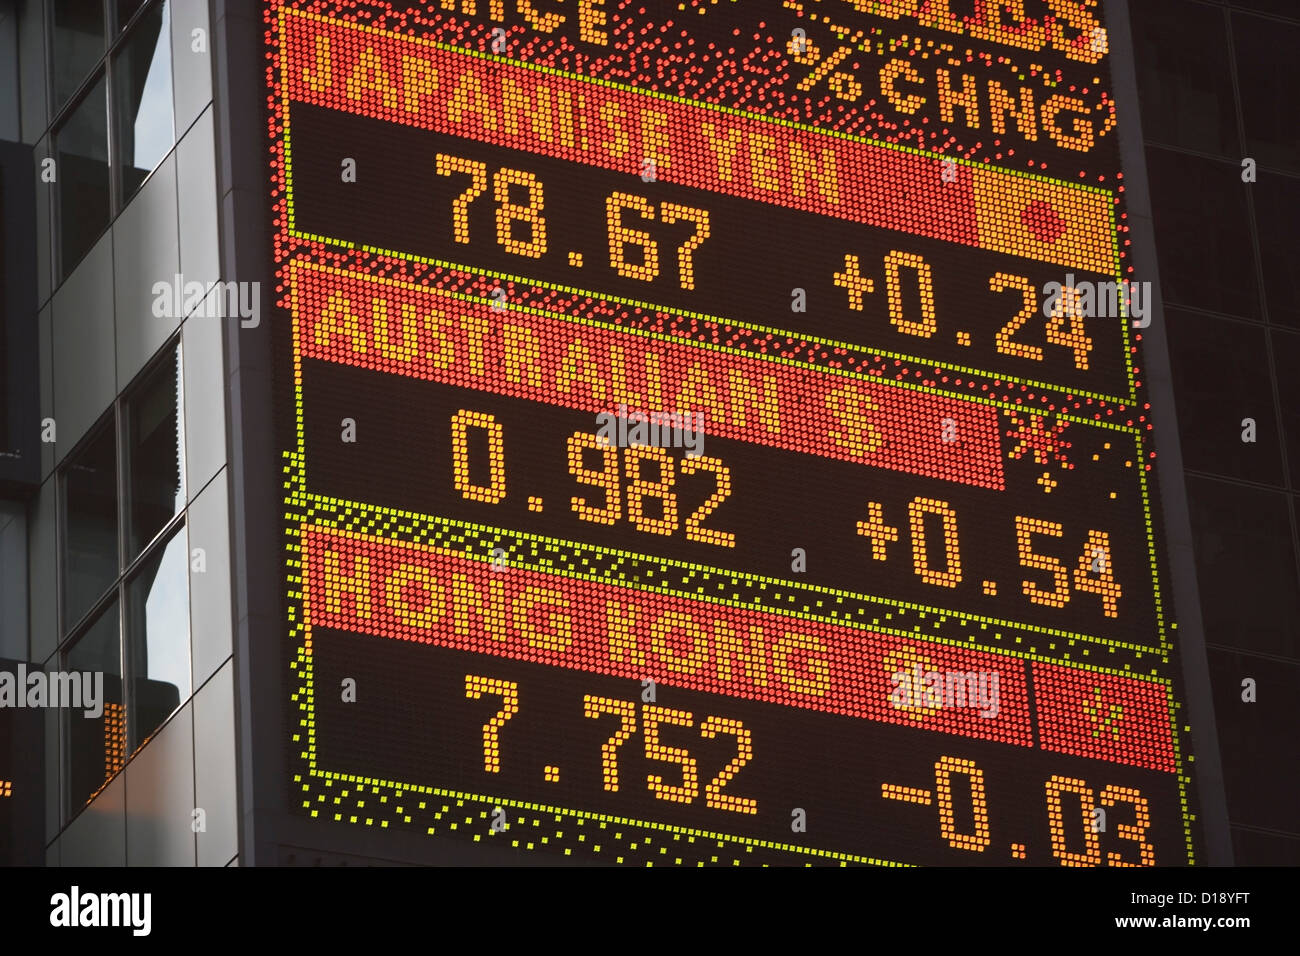 Currency exchange display Stock Photo